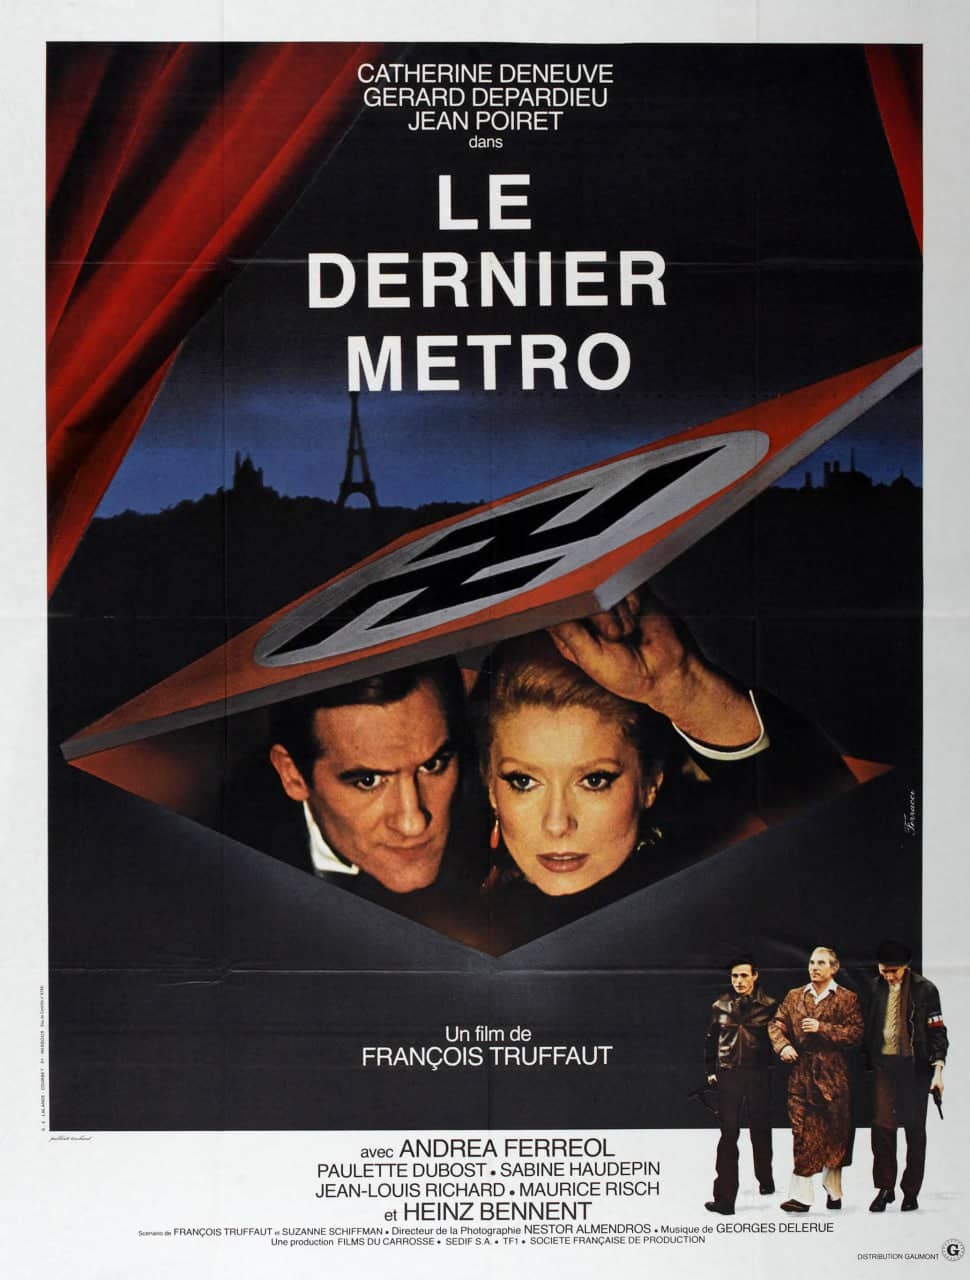 1980 最后一班地铁 Le dernier métro【1080p.BluRay.Remux.中字】